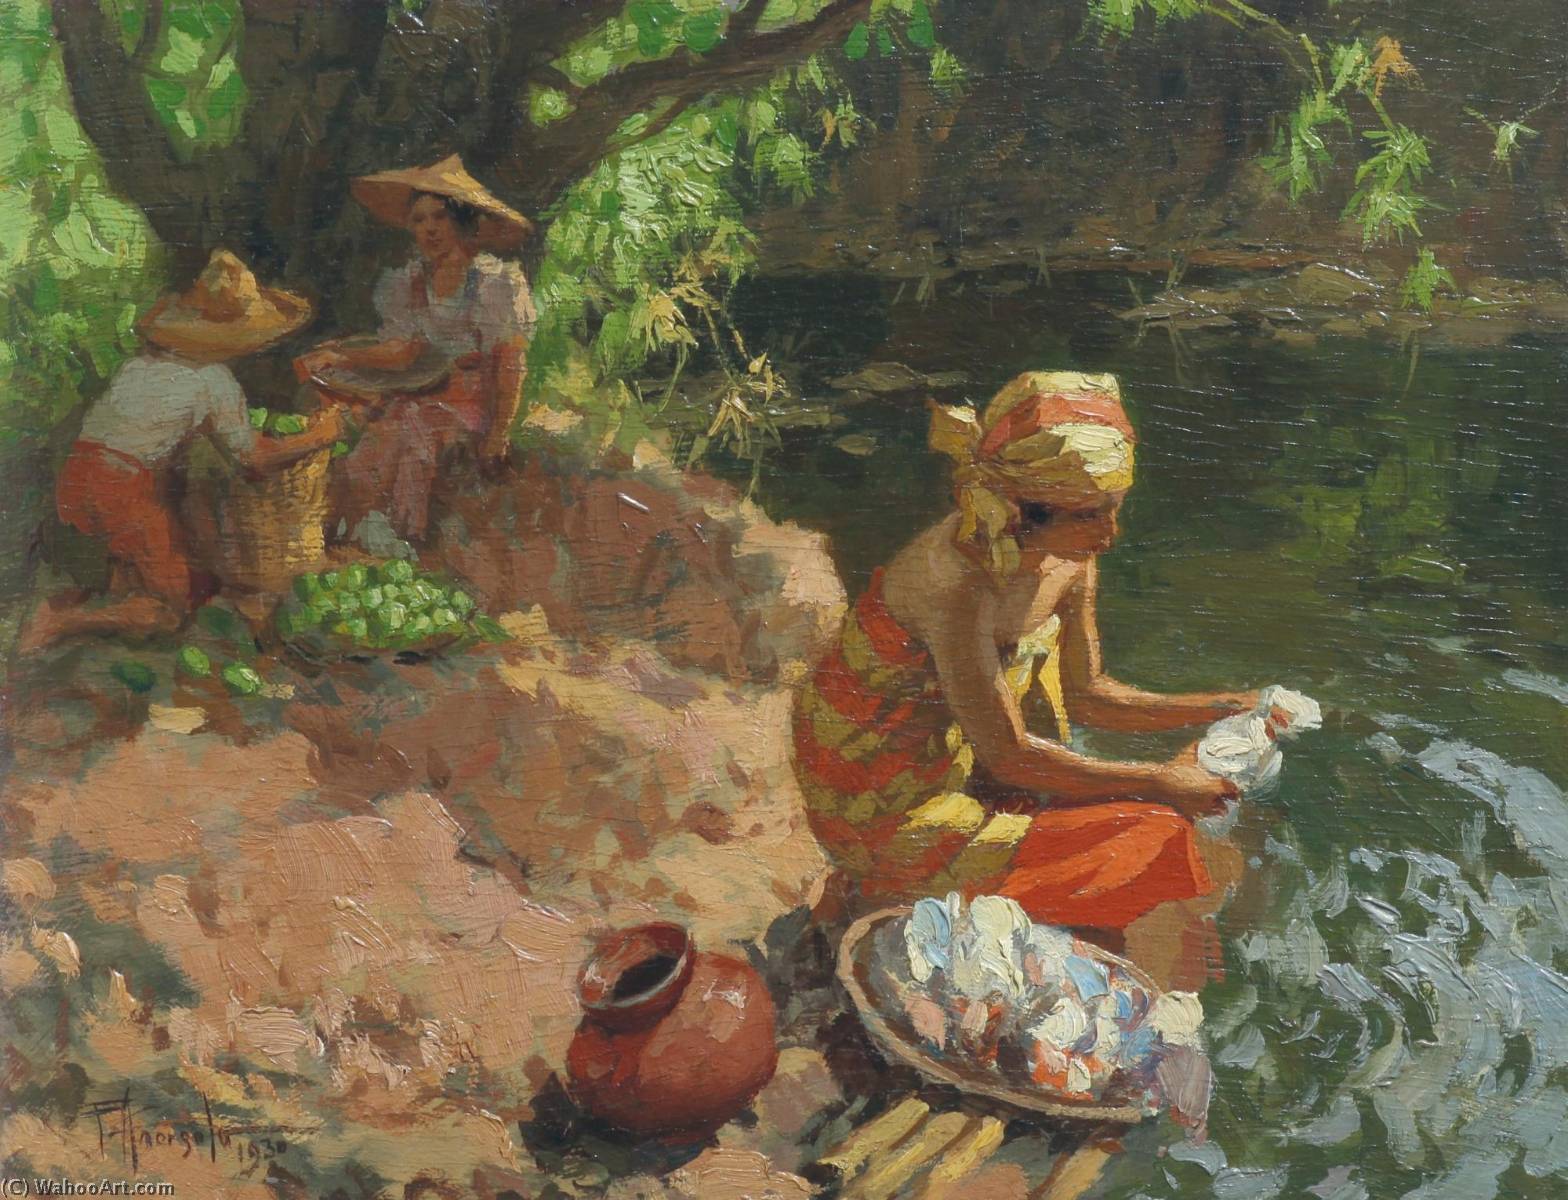 WikiOO.org - Enciklopedija likovnih umjetnosti - Slikarstvo, umjetnička djela Fernando Cueto Amorsolo - Washing By The River